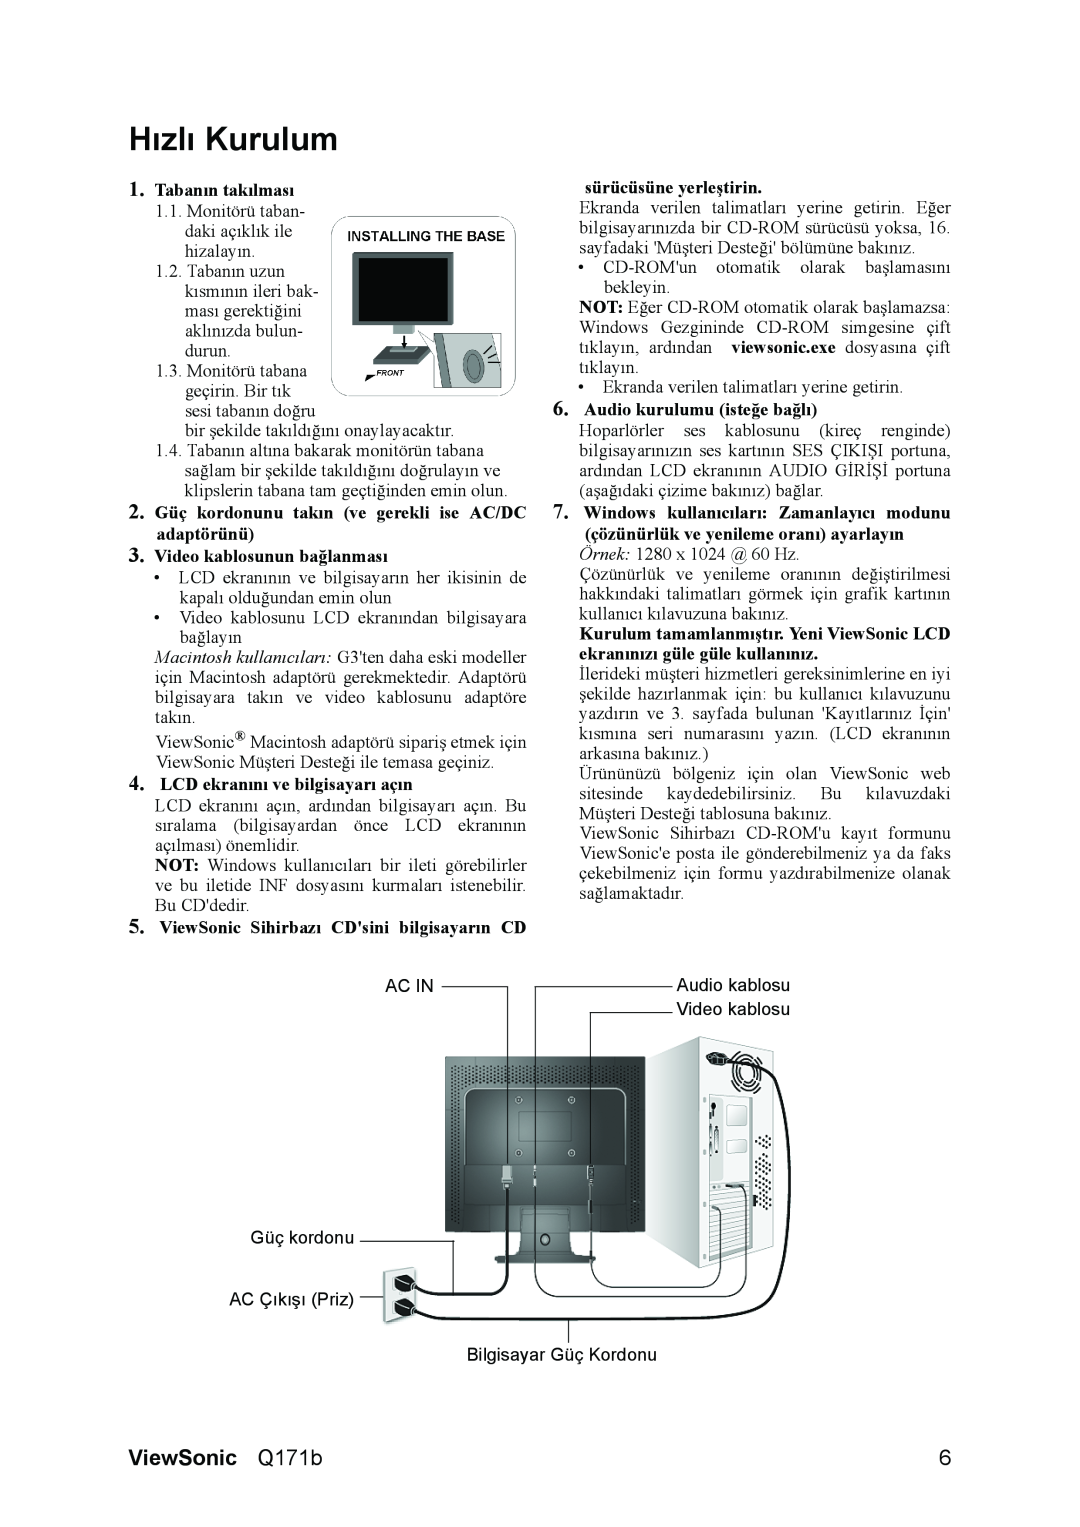 ViewSonic Q171B manual Hızlı Kurulum, ViewSonic Q171b 